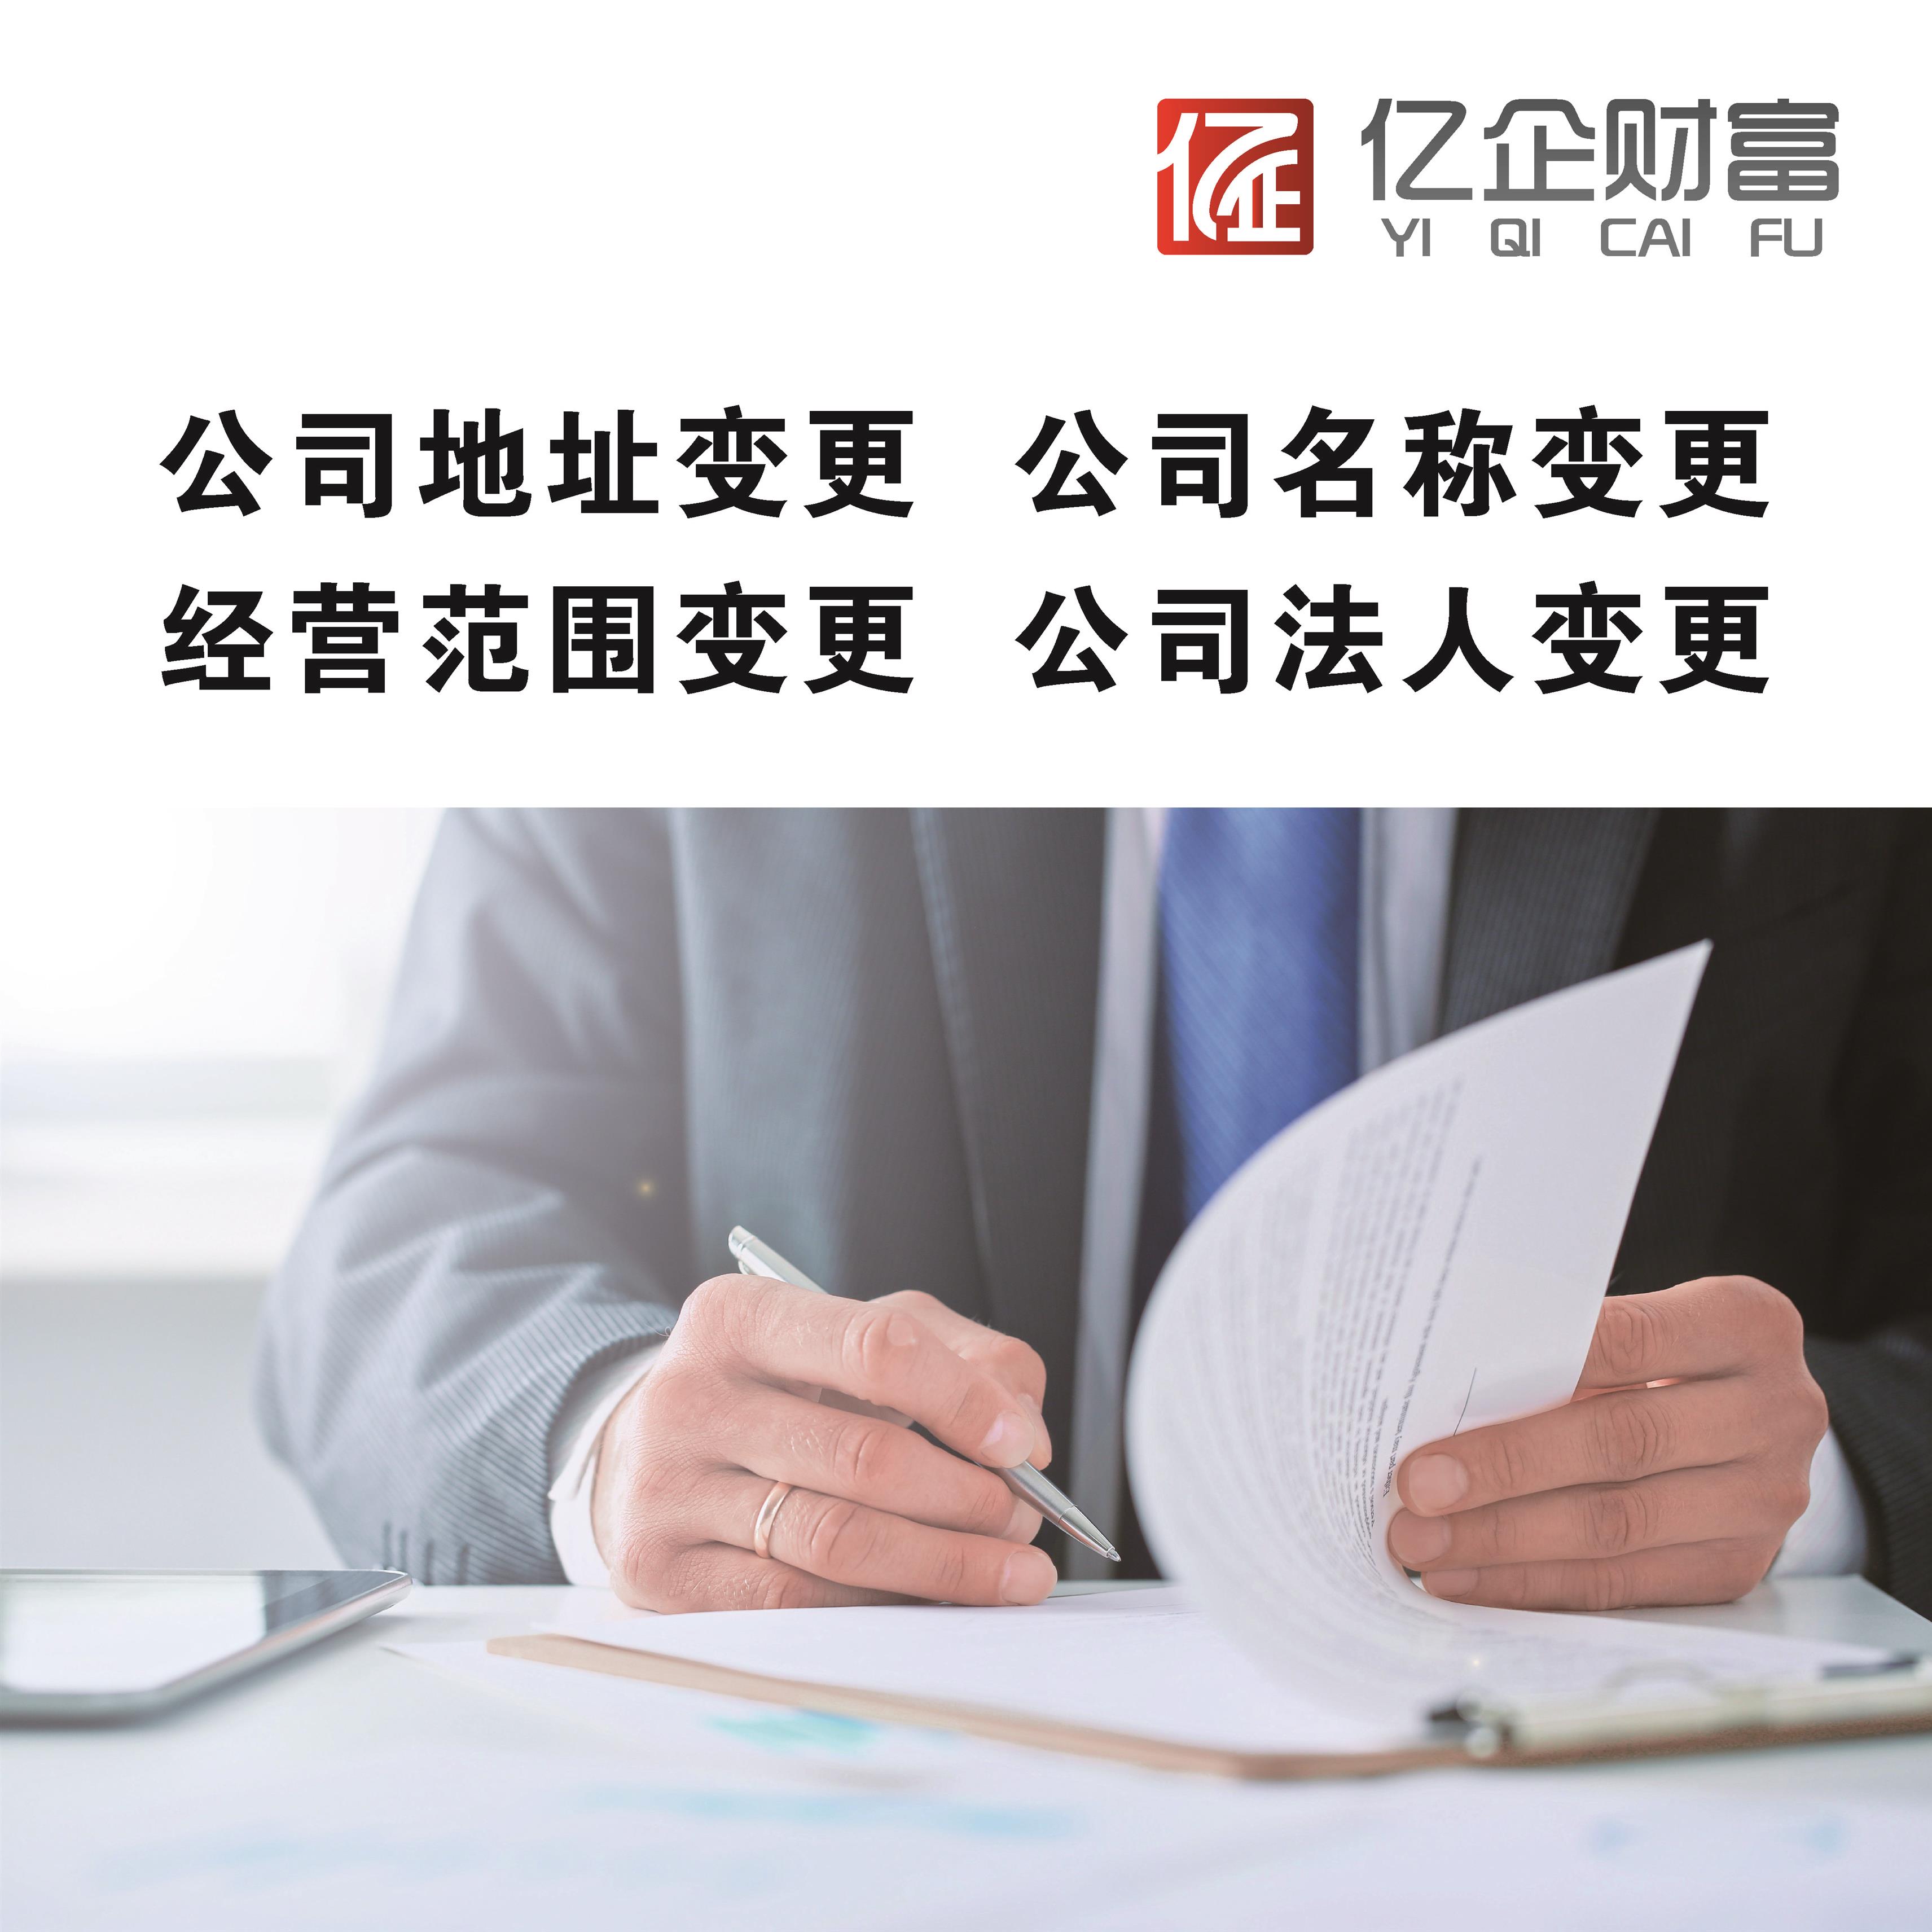 公司名称注册 密云县公司注册设立提供靠谱注册地址